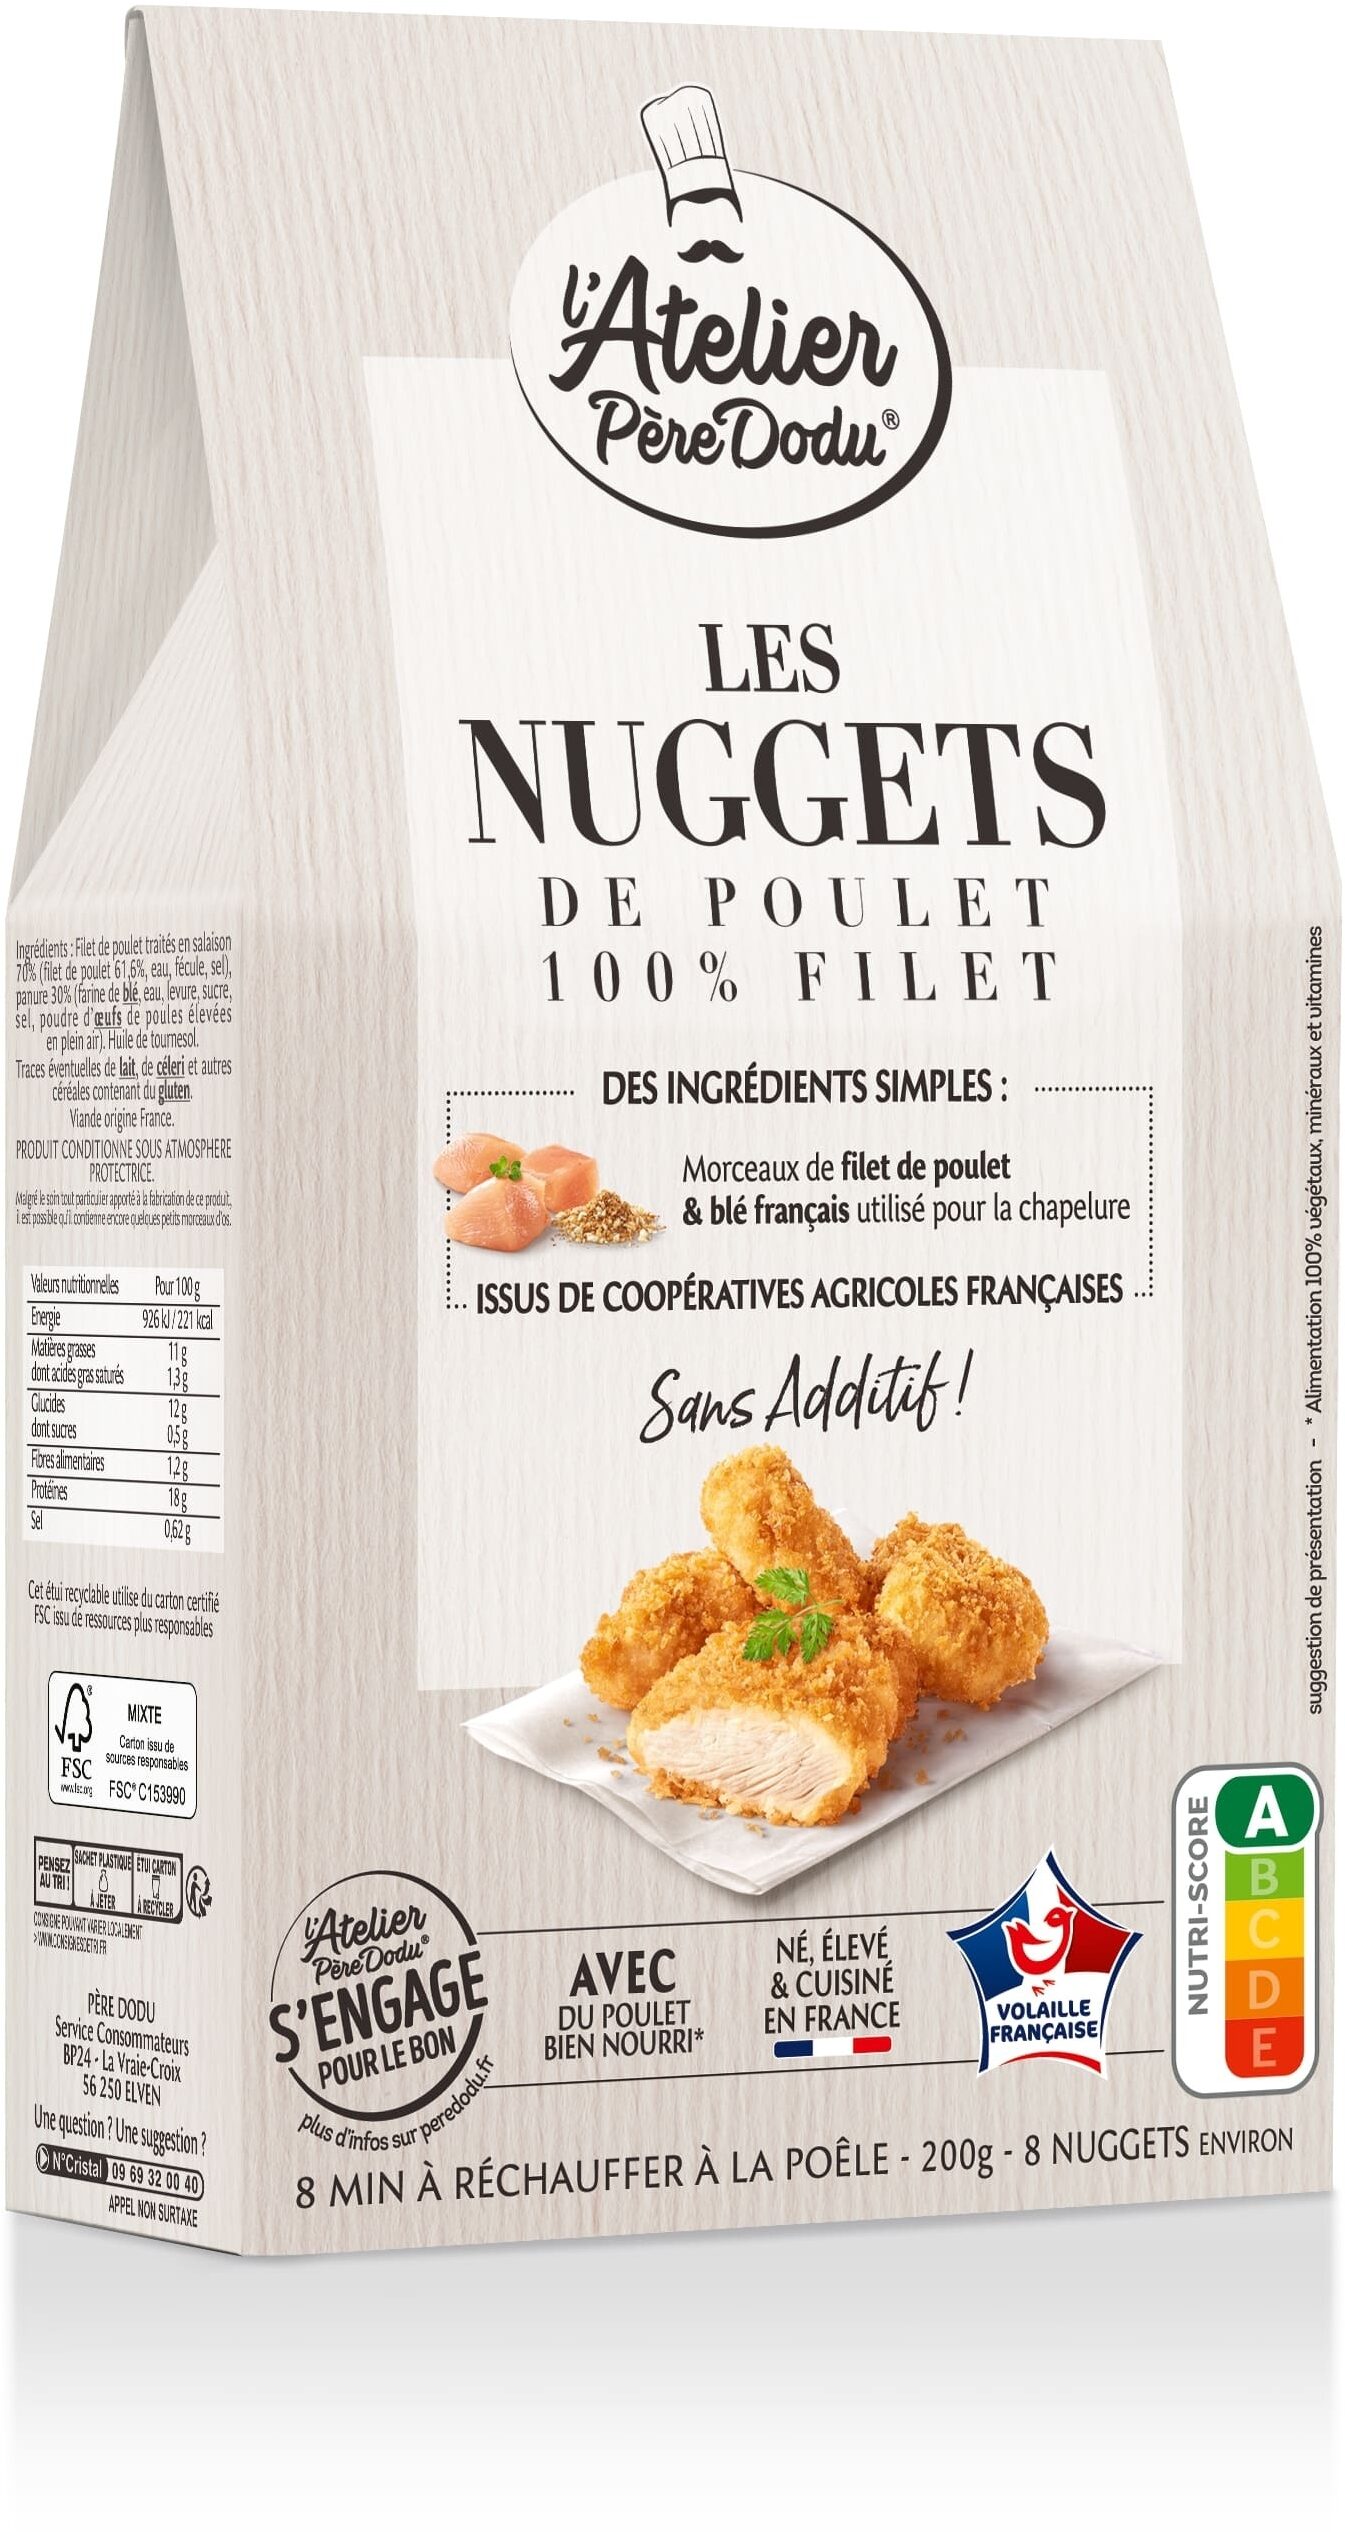 Nuggets de poulet 100% filet - Produit